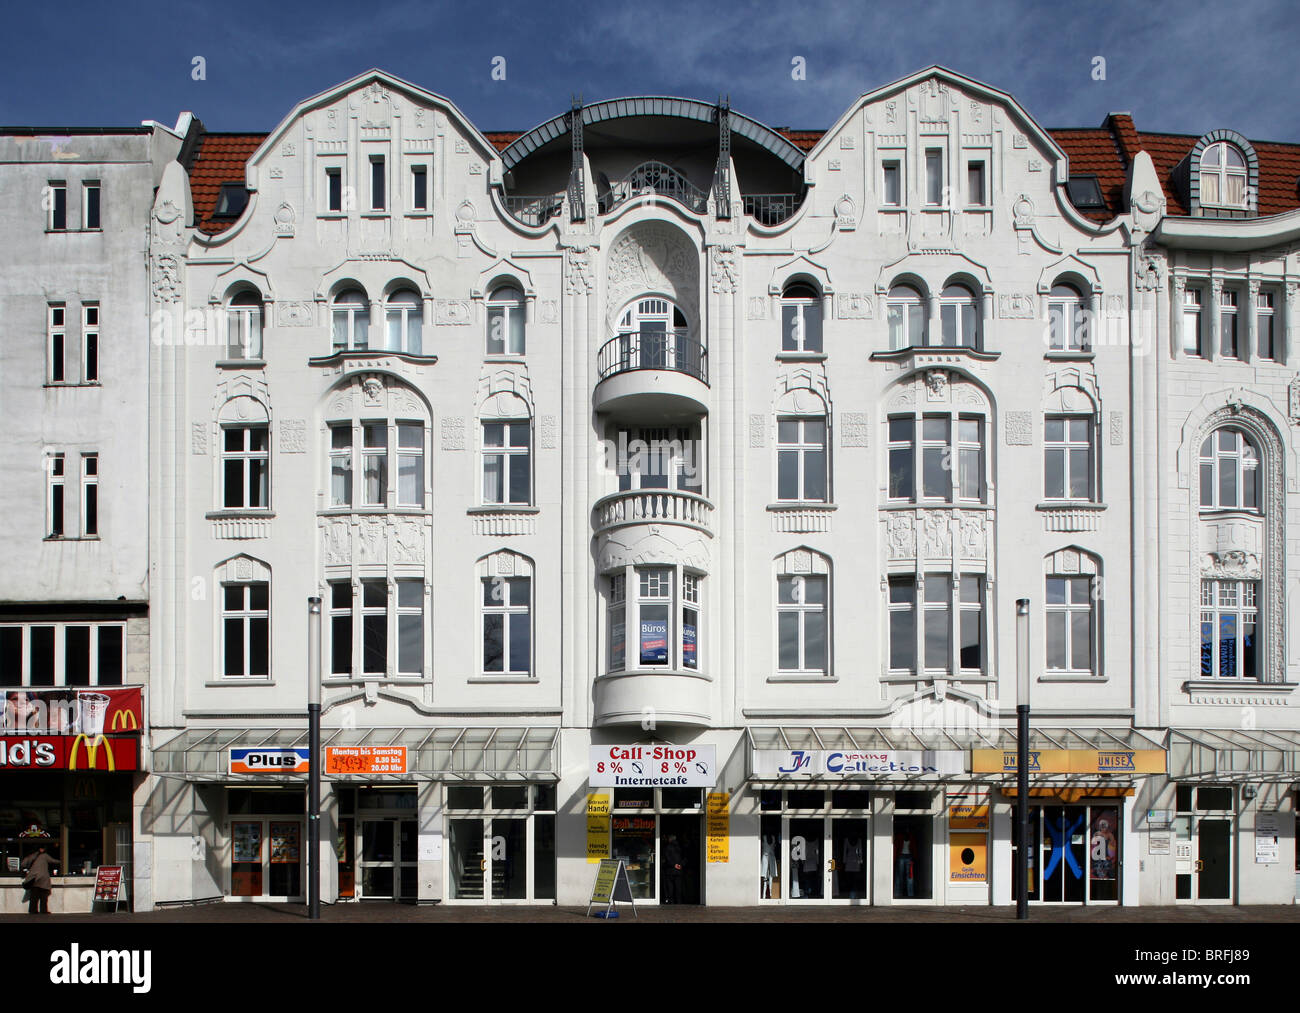 Façades de maisons art nouveau sur le parvis de la gare, Gelsenkirchen, Nordrhein-Westfalen, Germany, Europe Banque D'Images